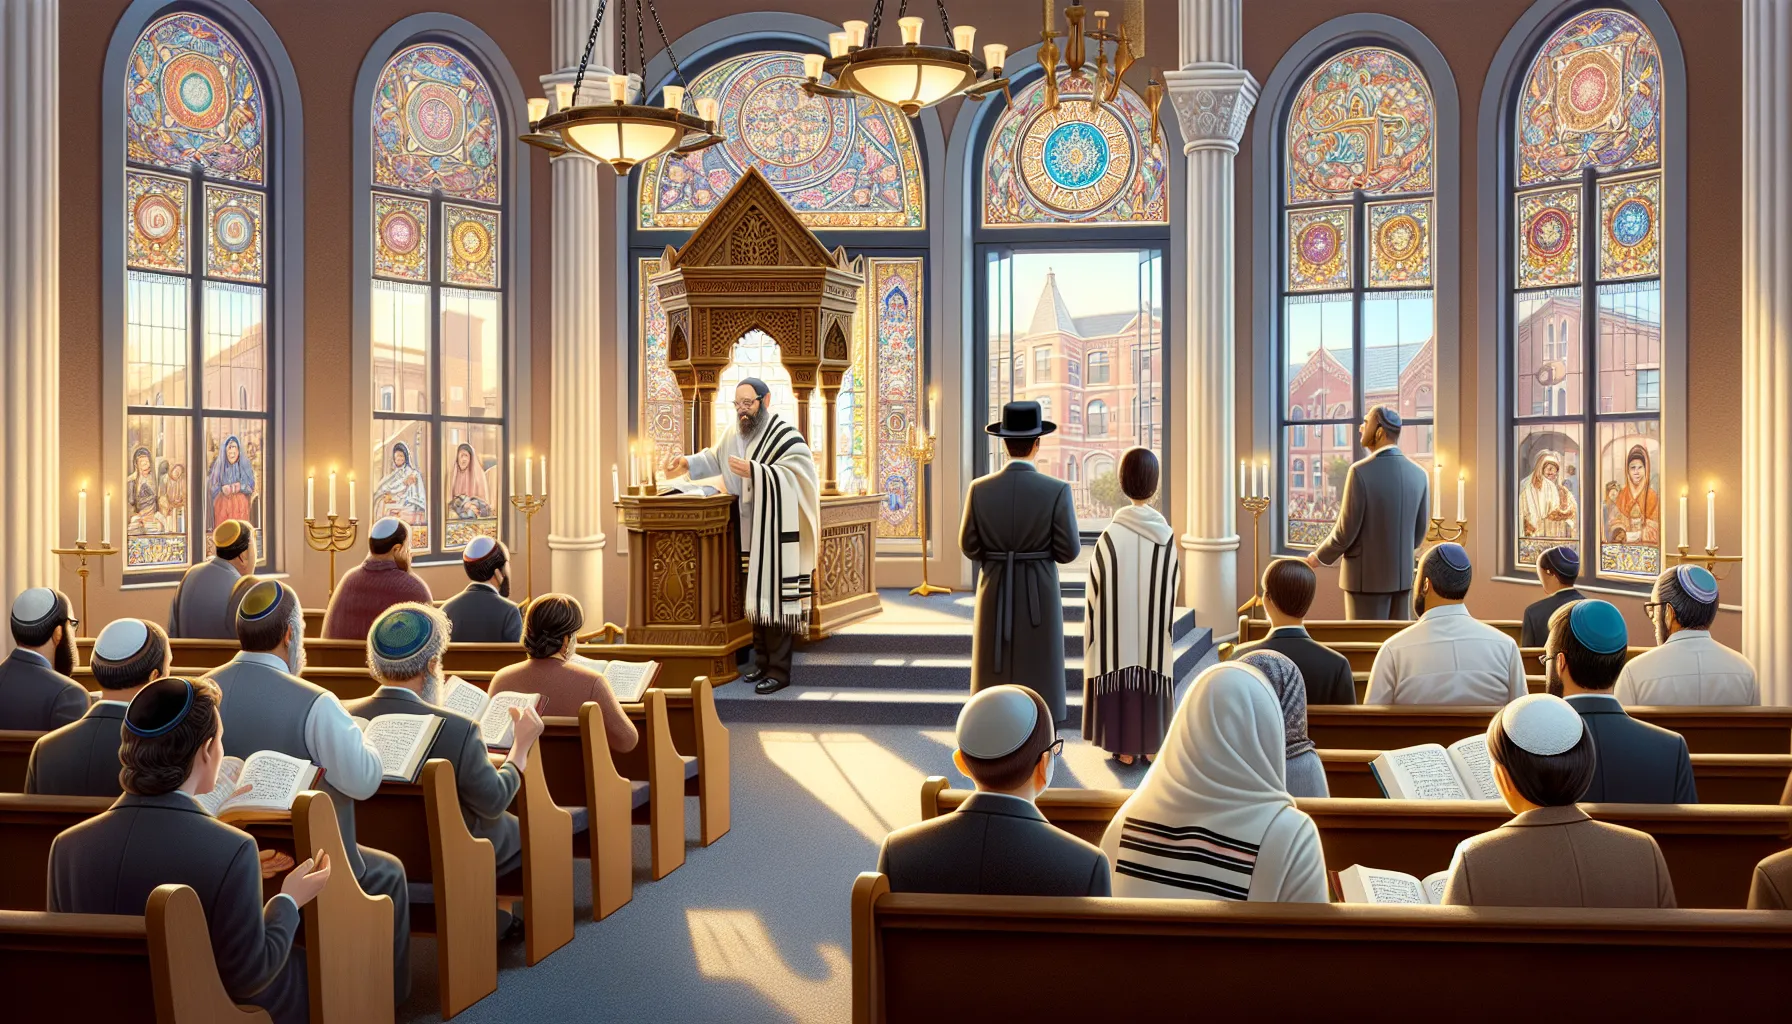 Imagen ilustrativa de una sinagoga durante un servicio religioso en la comunidad judía.